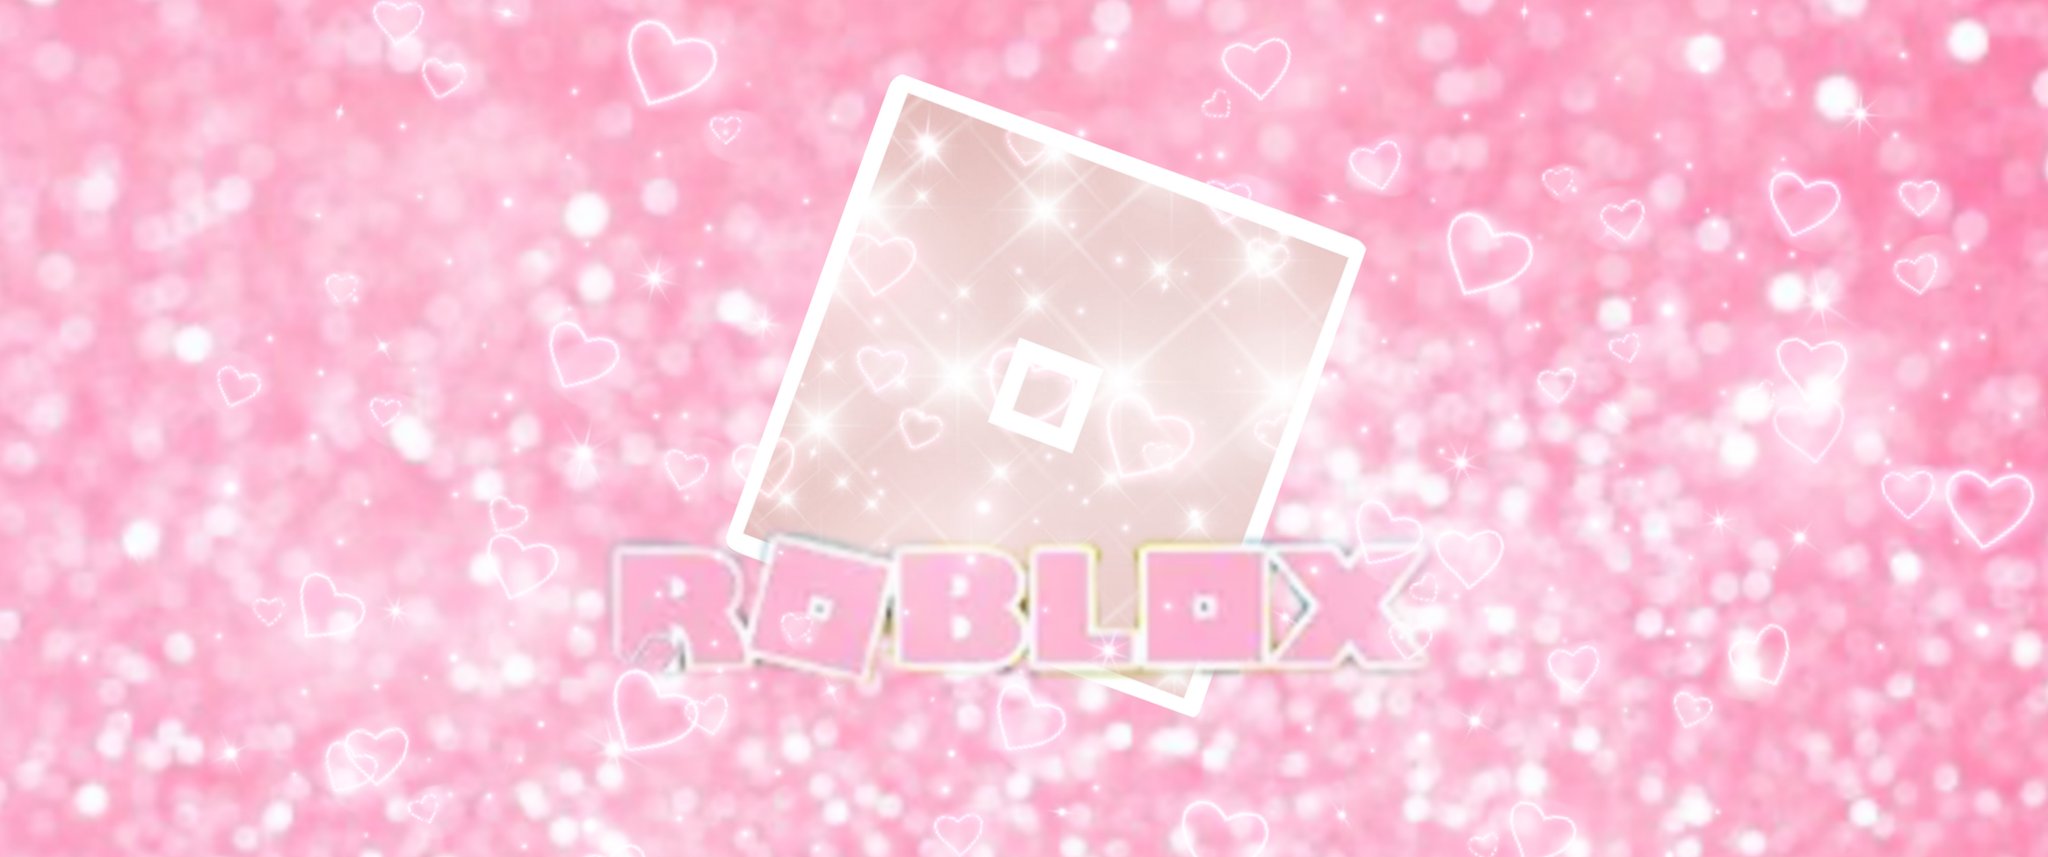 Logo Roblox màu hồng nhạt sẽ đem lại cho các bạn một mùa hè vô cùng rực rỡ và nhiều niềm vui. Tông màu hồng nhạt mang đến một cảm giác tươi mới và khiến cho bức tranh trông vui tươi và đáng yêu.